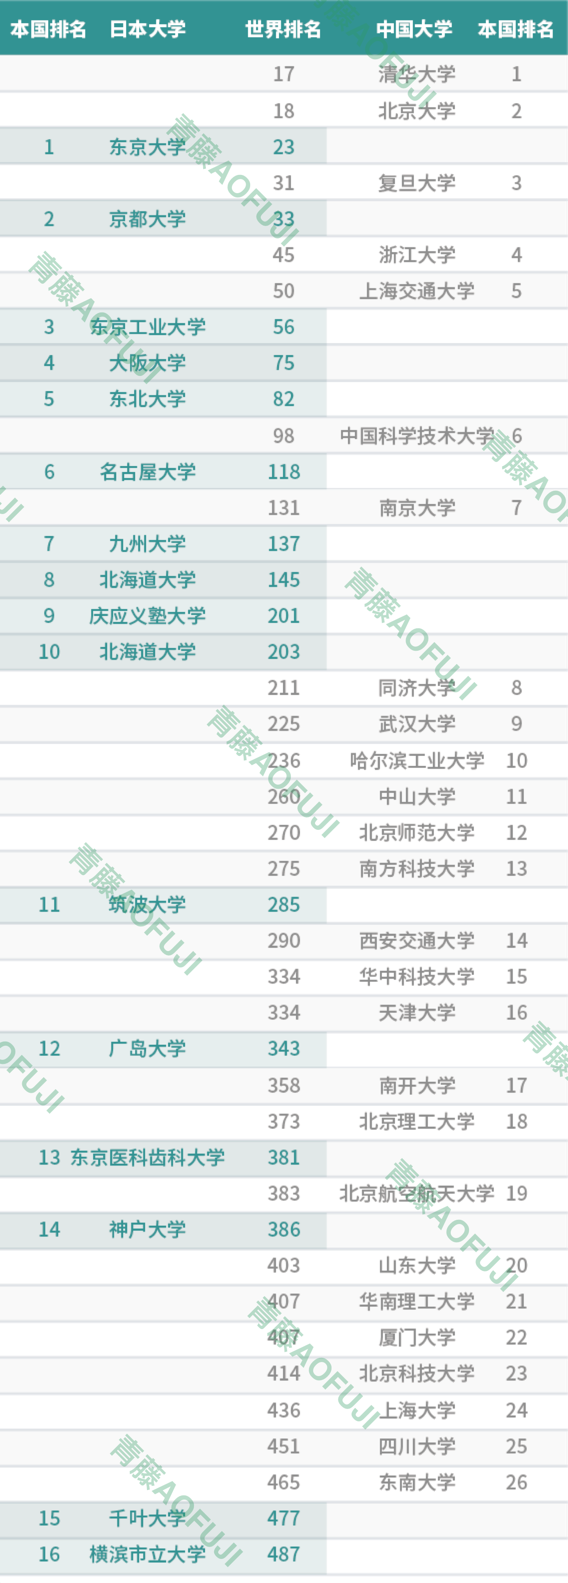 注:北海道大学重复两次,排名第十的是早稻田大学